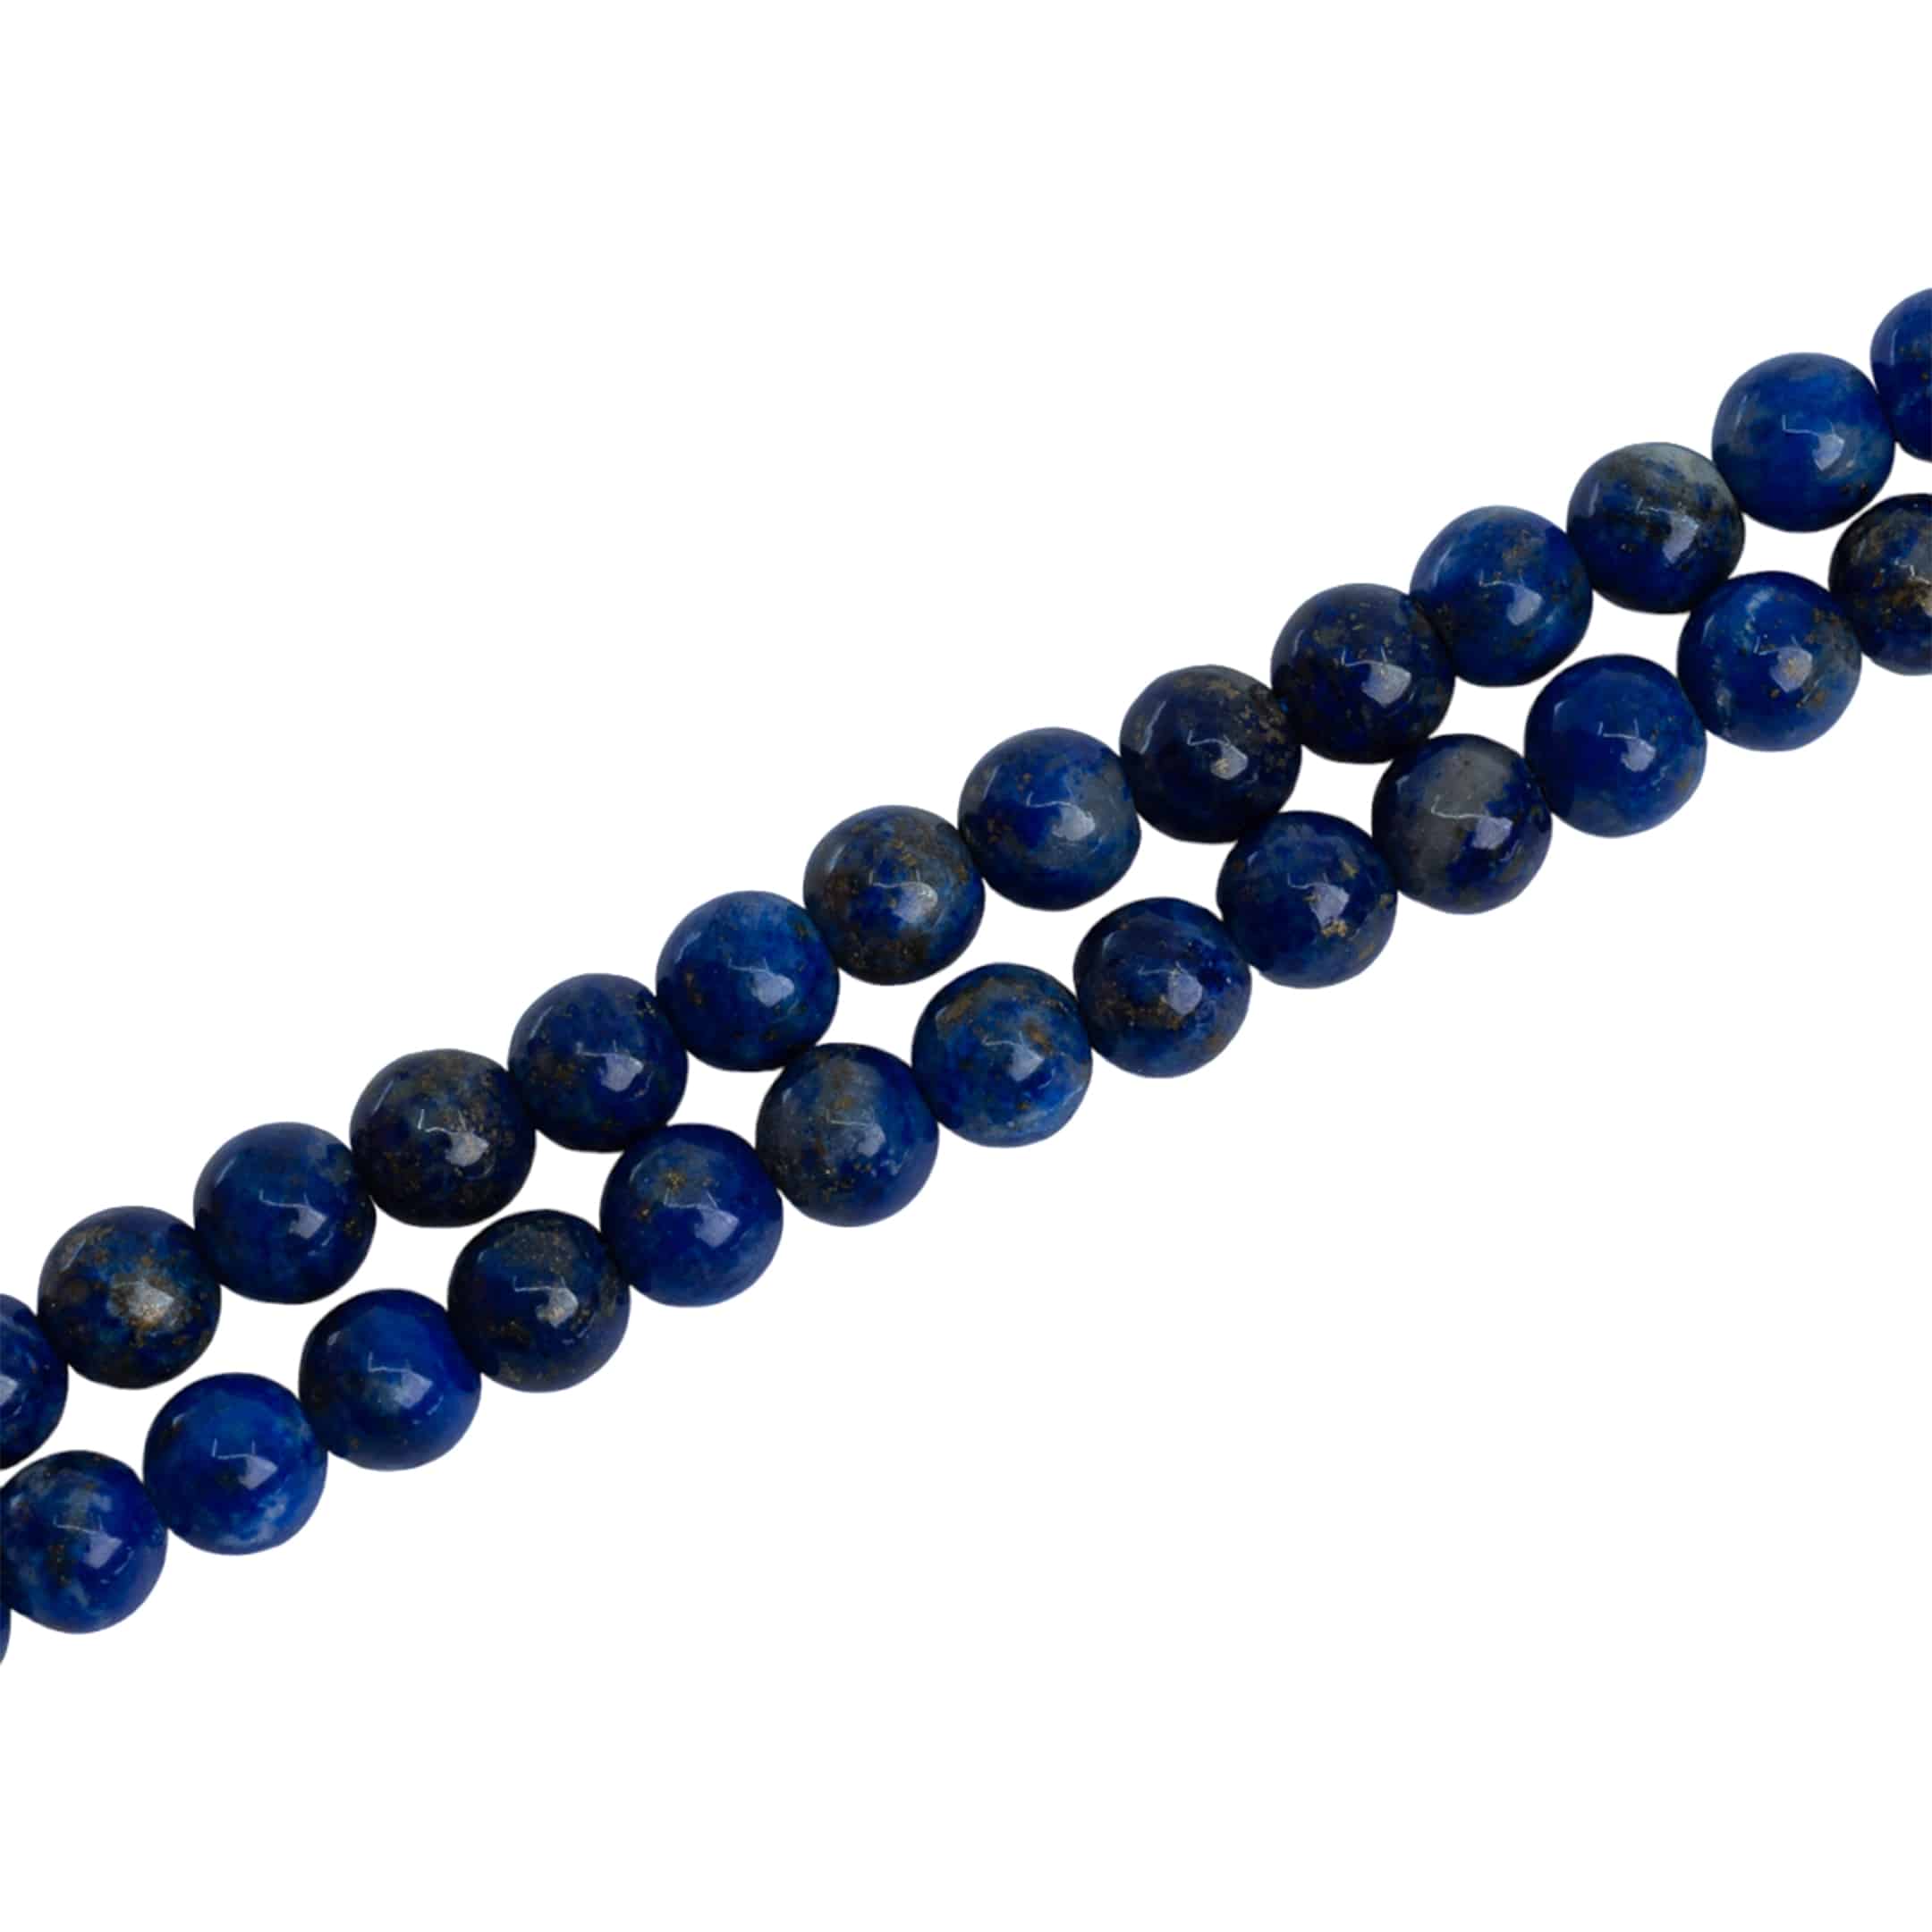 Perles de la Pierre Précieuse Lapis Lazuli (4 mm)